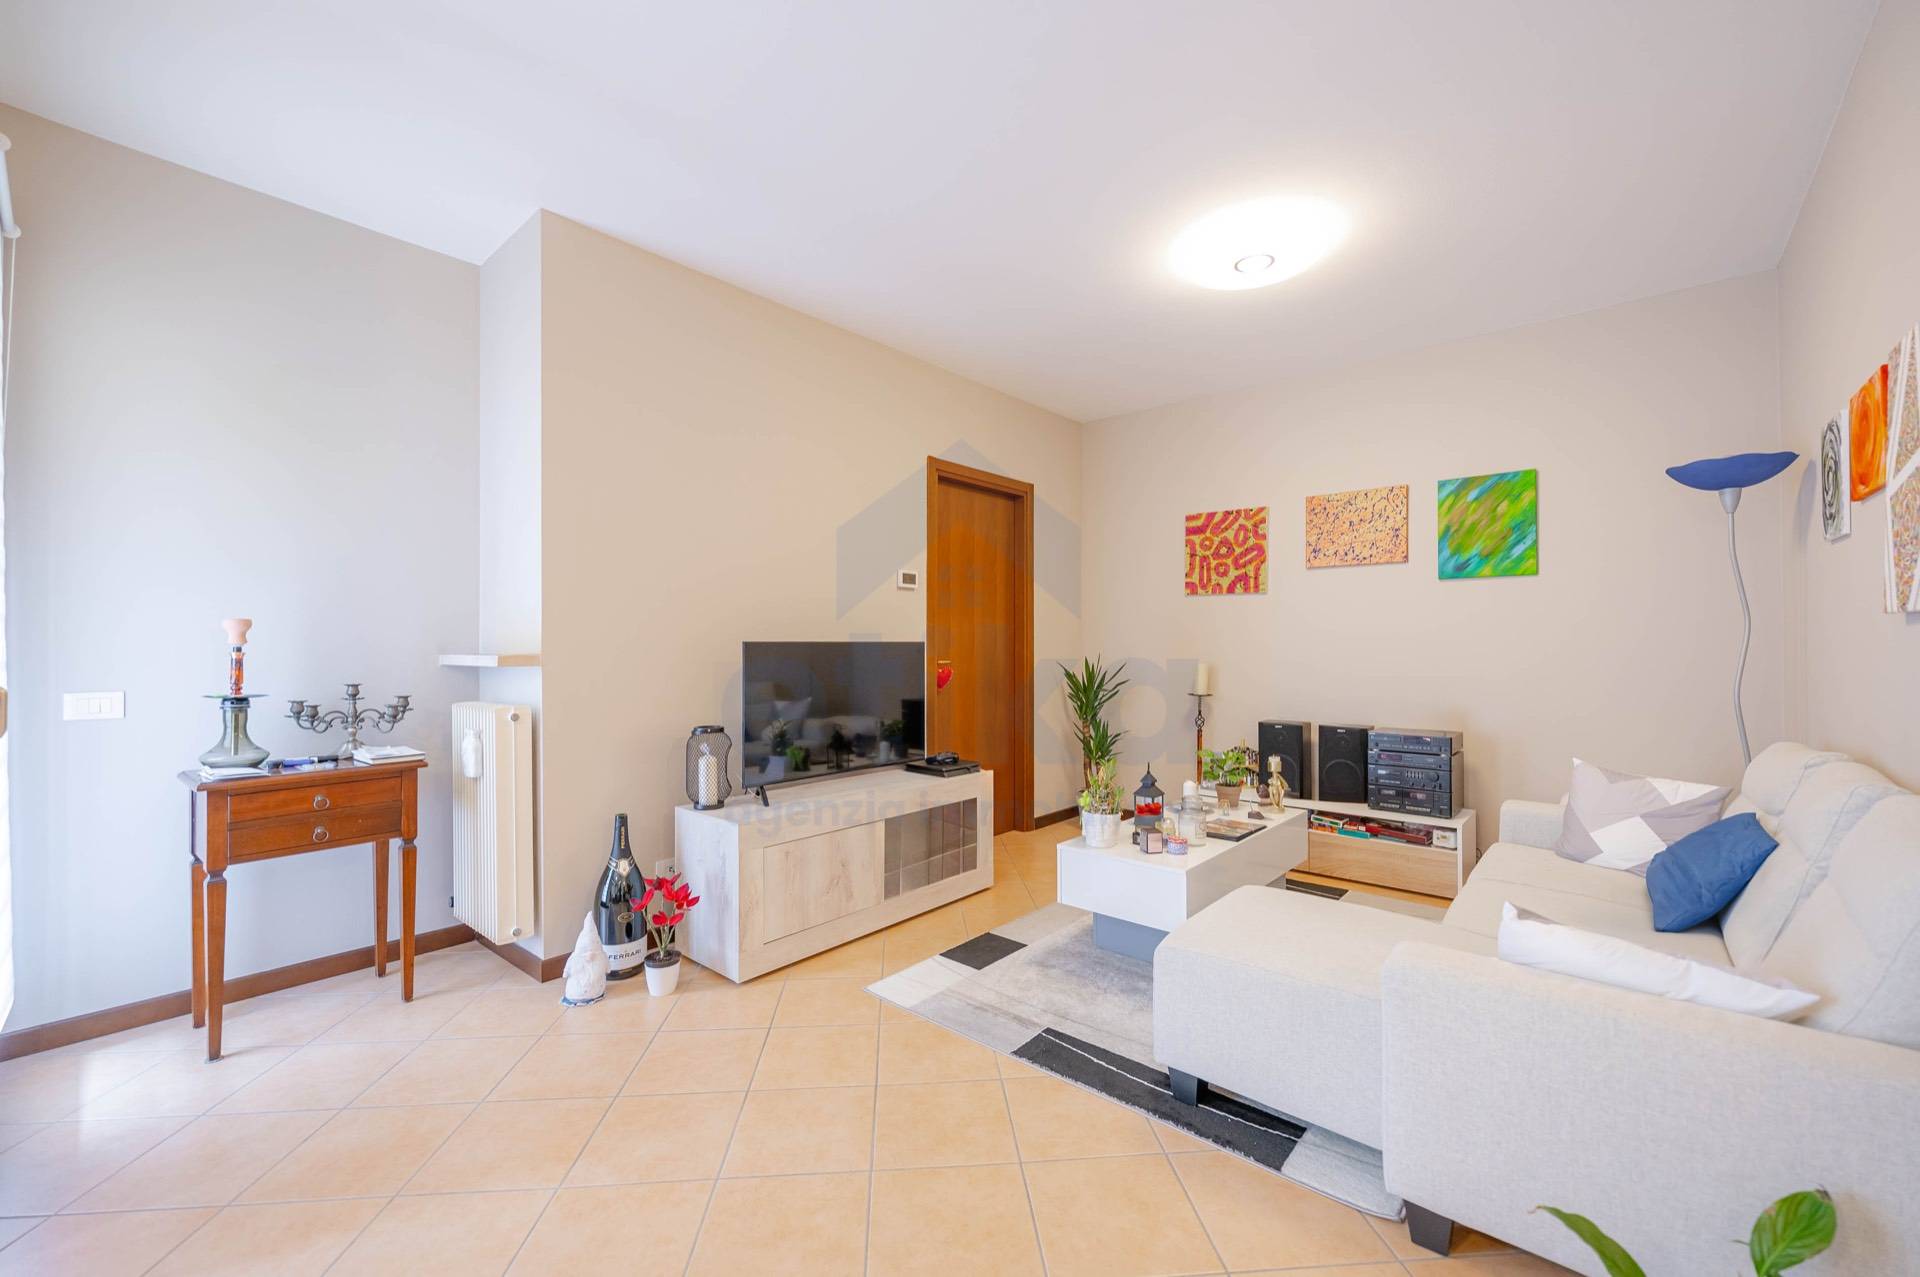 Appartamento in vendita a Casier, 4 locali, zona Località: DossondiCasier, prezzo € 105.000 | PortaleAgenzieImmobiliari.it